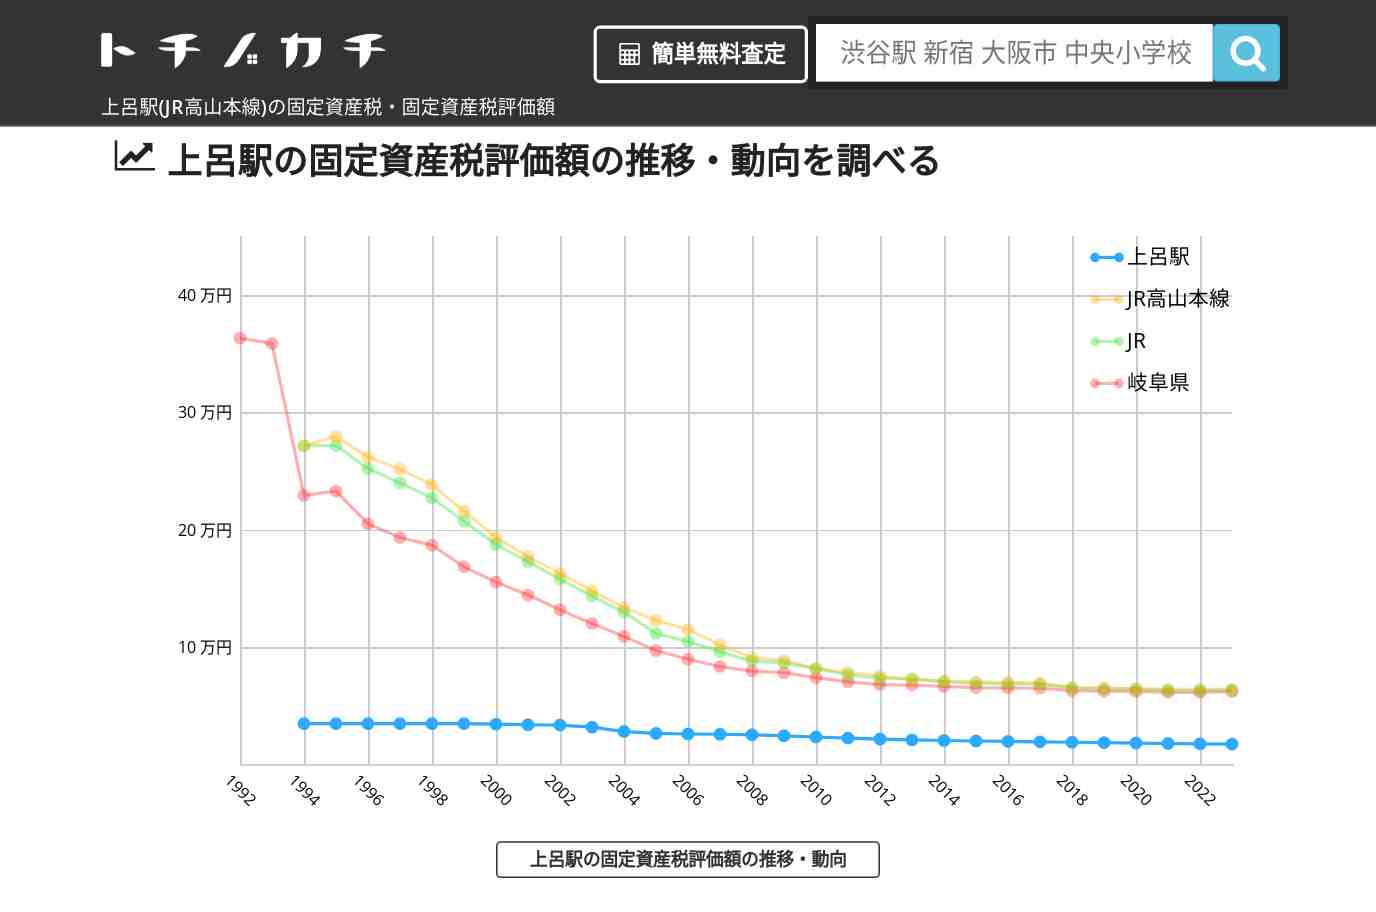 上呂駅(JR高山本線)の固定資産税・固定資産税評価額 | トチノカチ